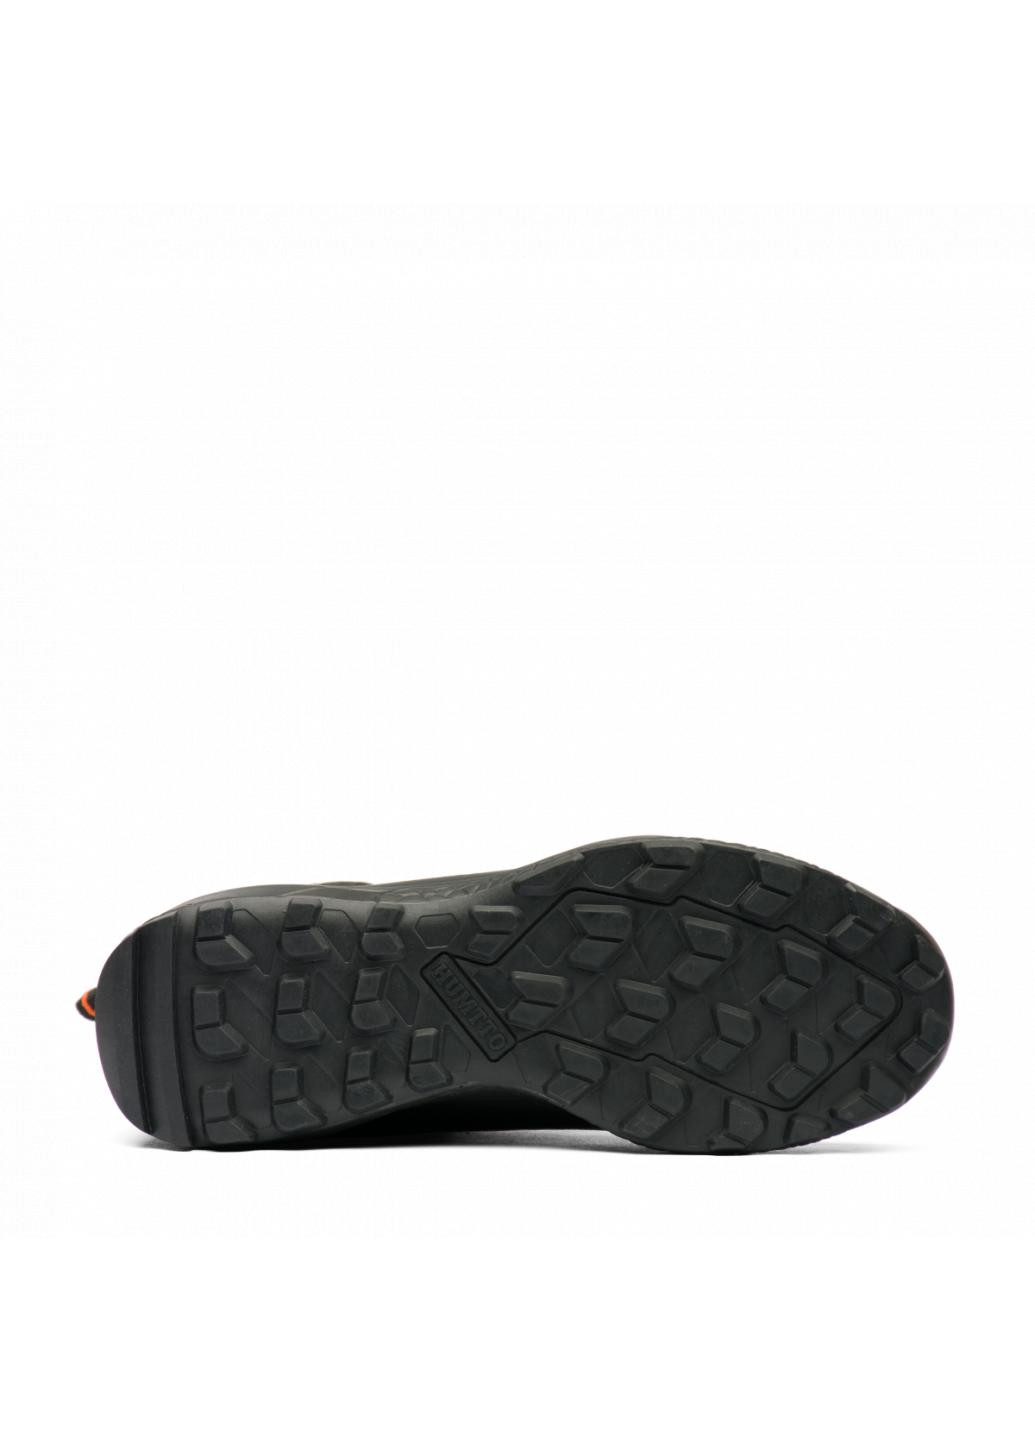 Черные зимние ботинки мужские 230078a1 Humtto